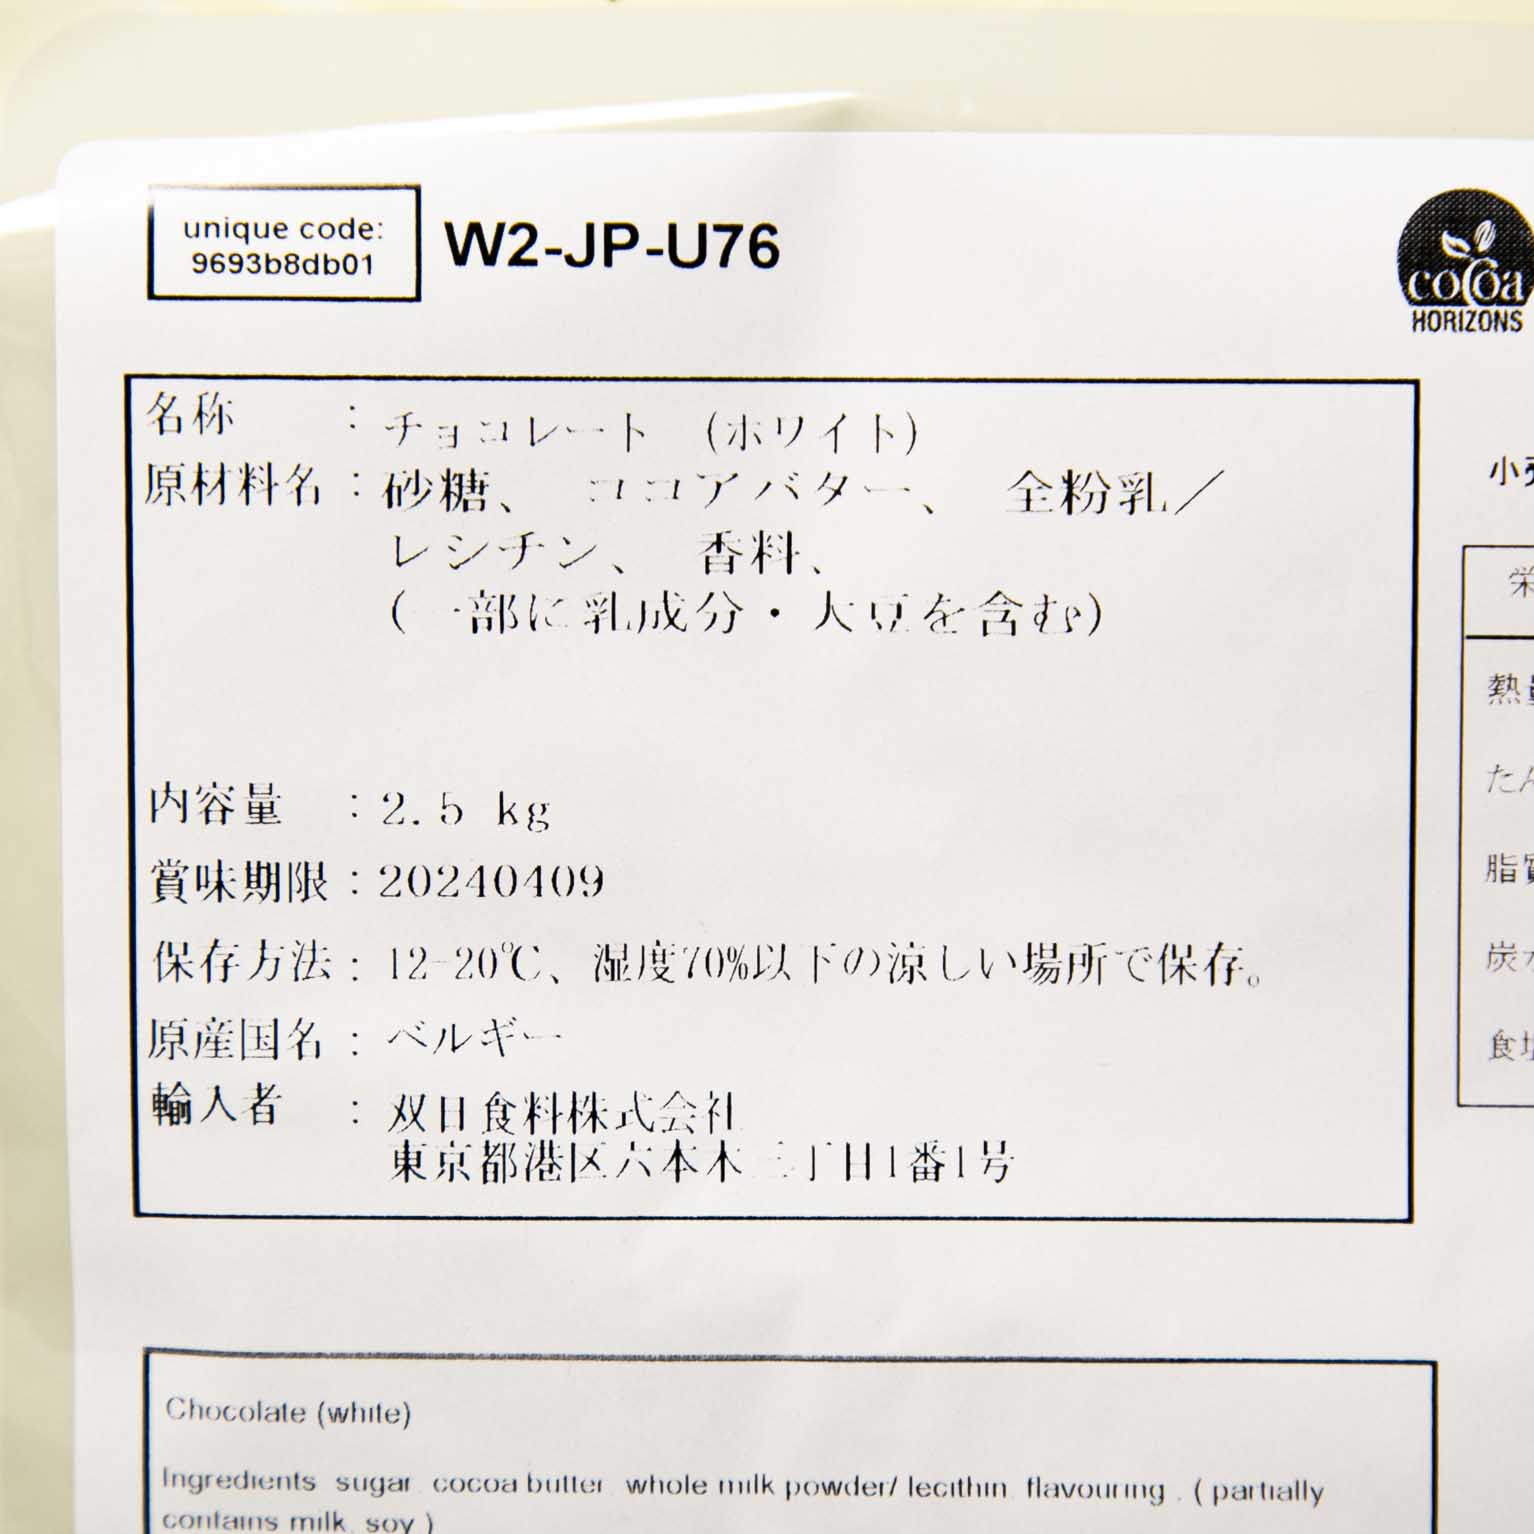 ホワイトチョコレート W2 28% 2.5kg : バリーカレボー / 前田商店 / 双